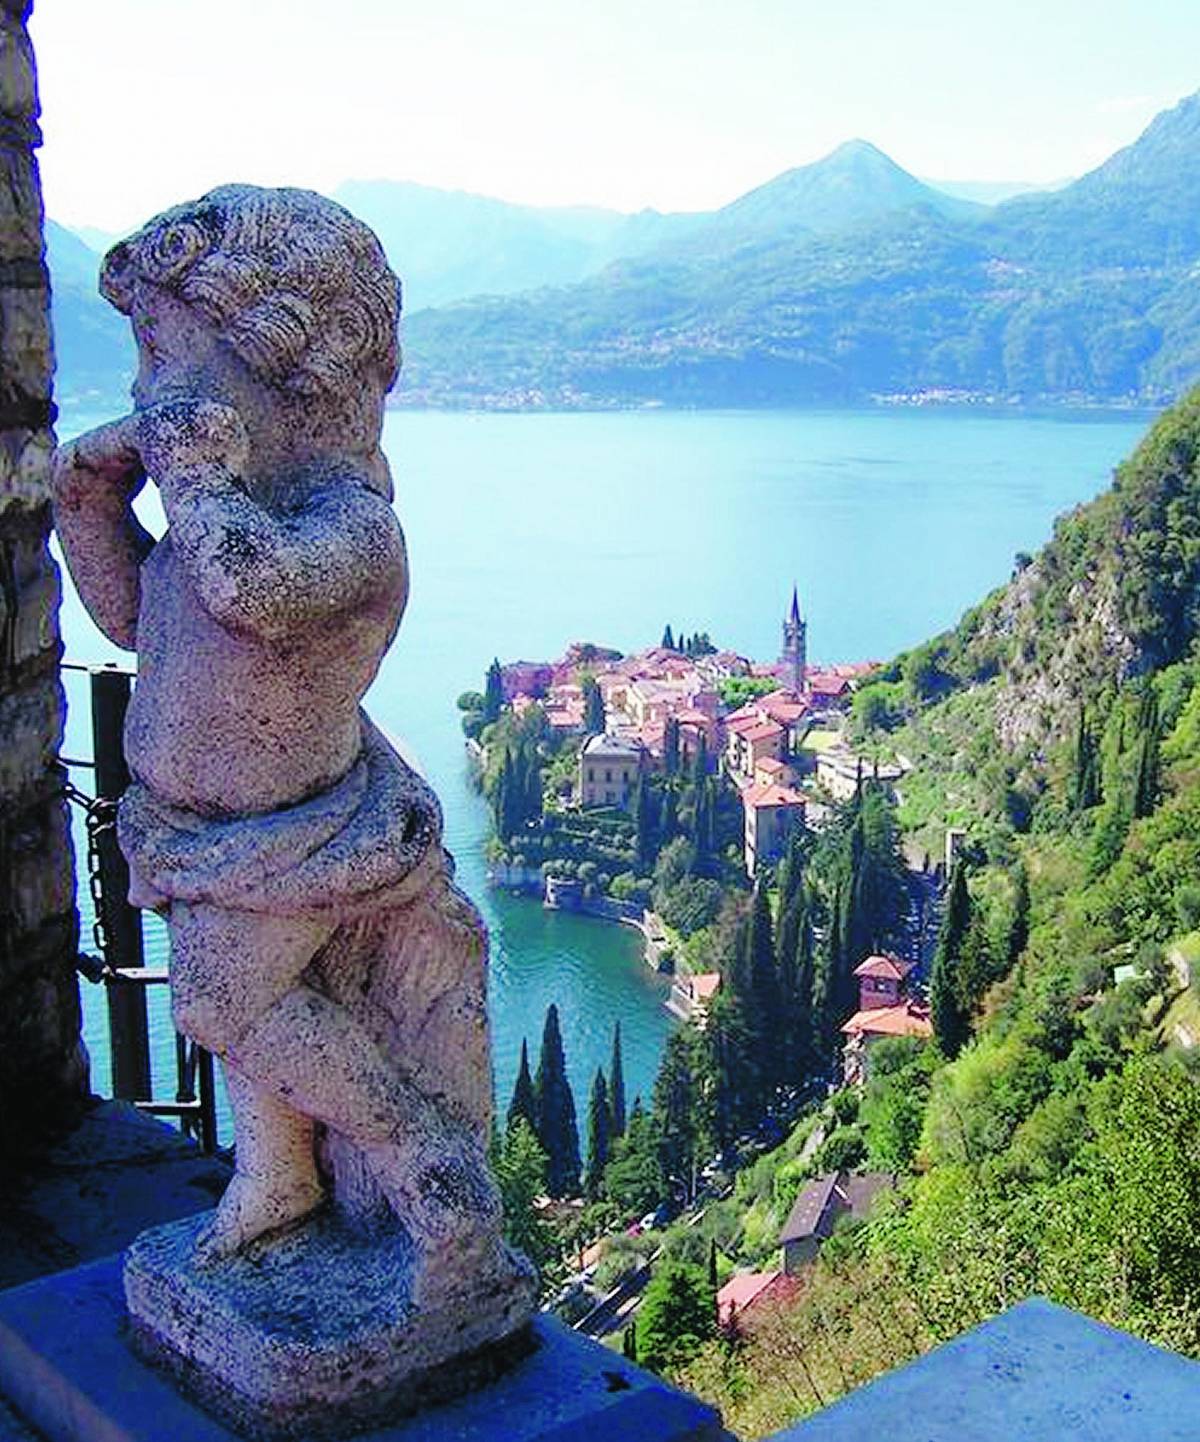 Per crotti e ville, il buono e il bello del lago di Como